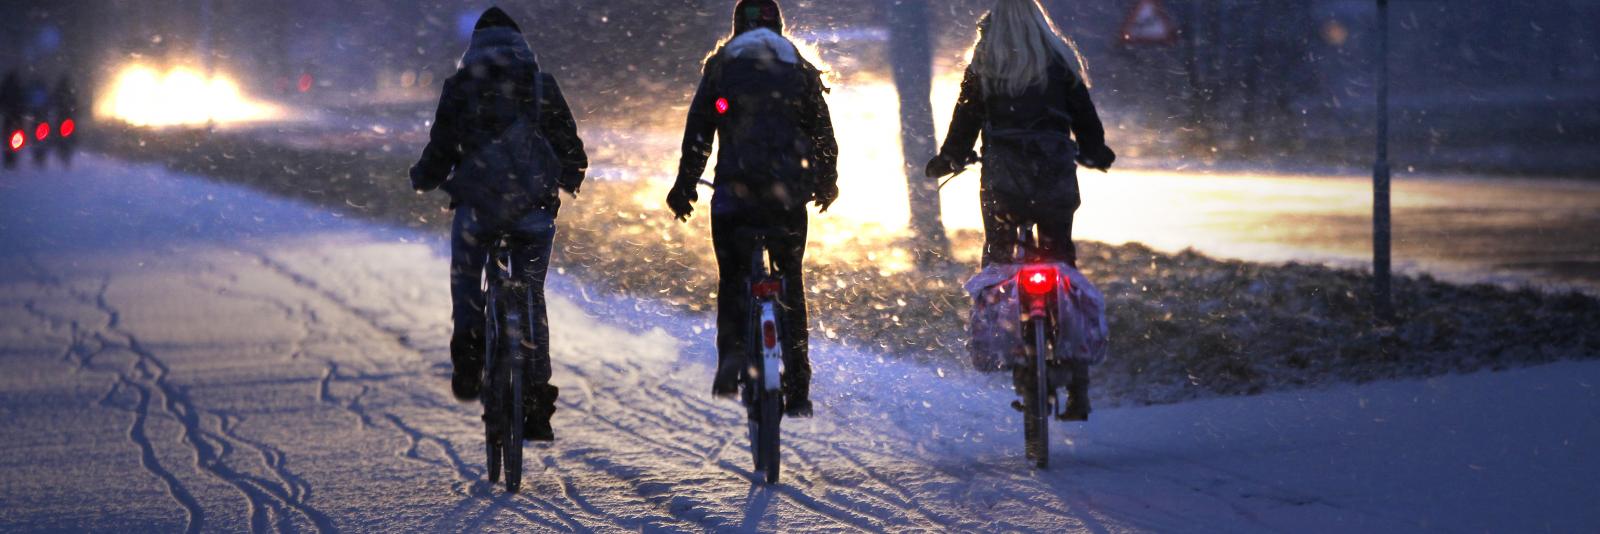 Gevoel ik heb het gevonden Mathis Politie doet oproep aan ouders: "Controleer de fietsverlichting van je kind"  - NH Nieuws